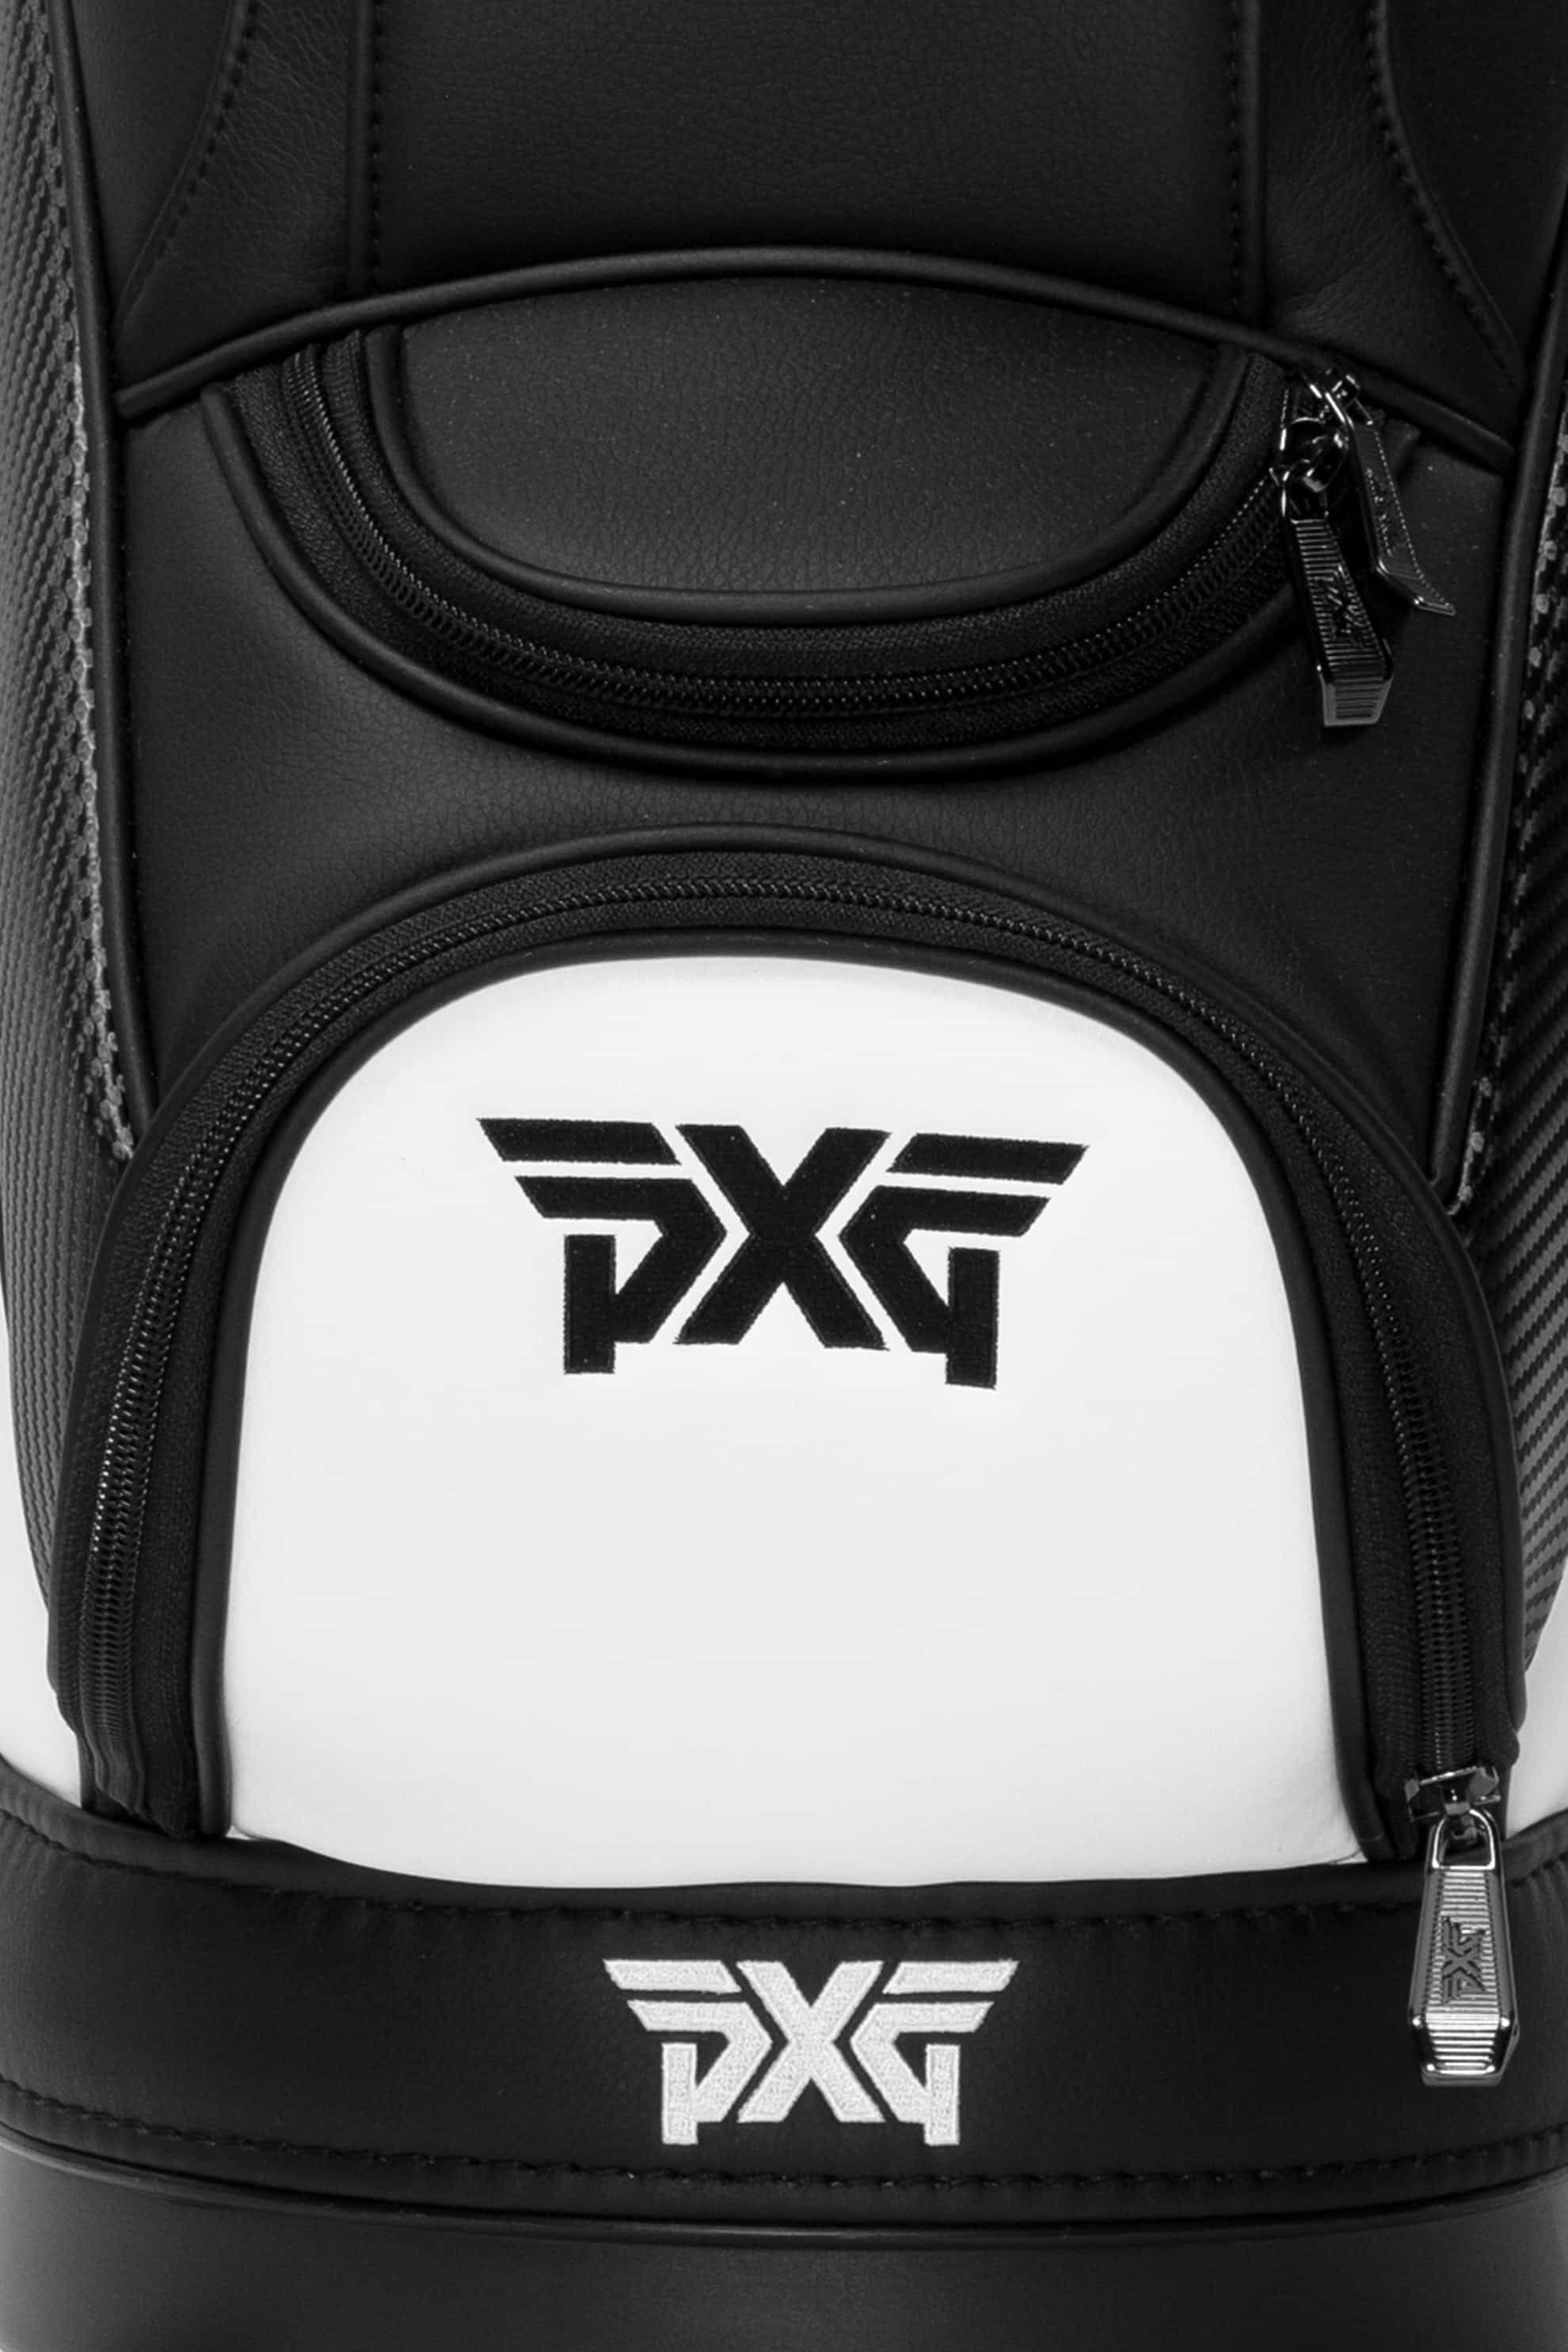 Den Caddy Bag | Golf Bags | Standing, Carry & Cart Bags - PXG